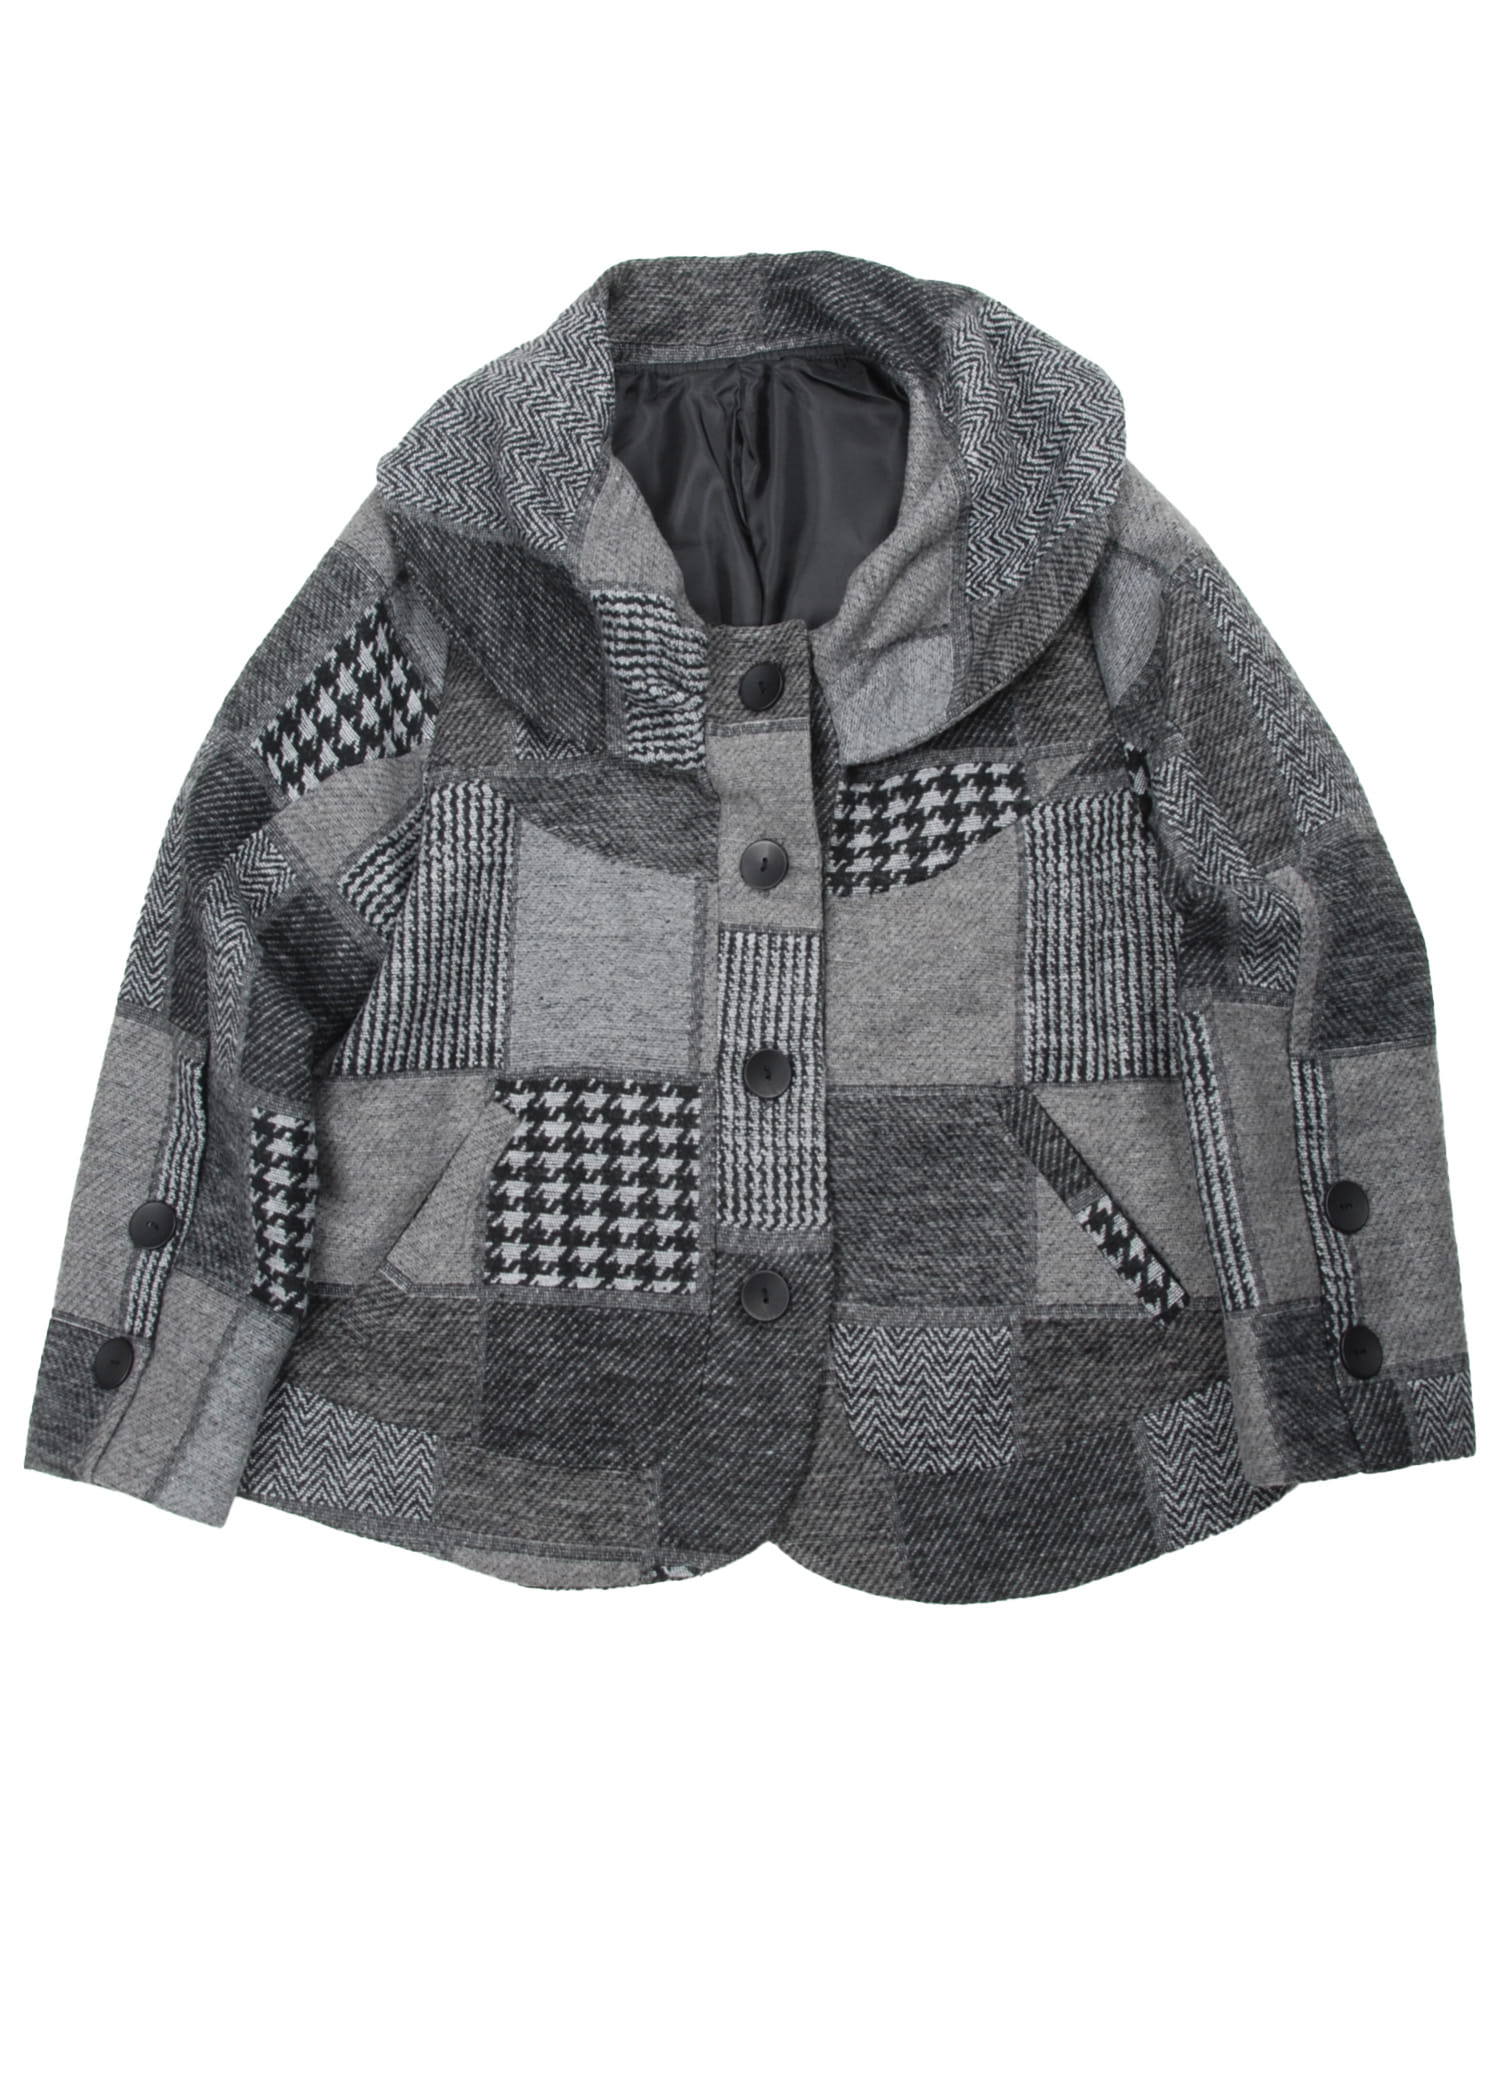 select vintage : crazy pattern short jacket